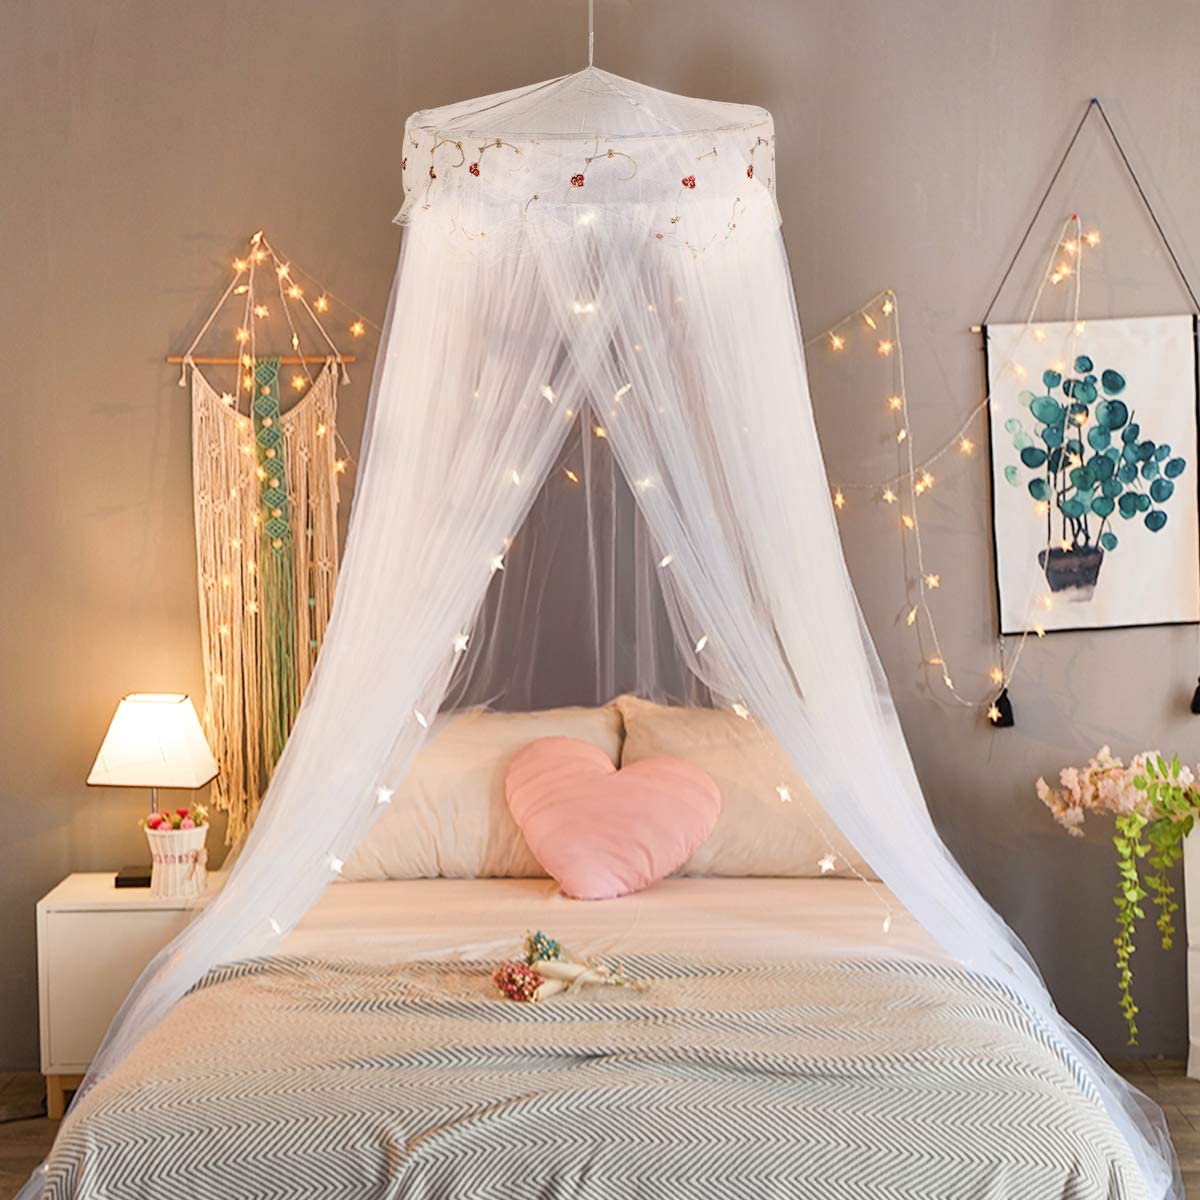 Кровать с балдахином – идеальный выбор места для сна.